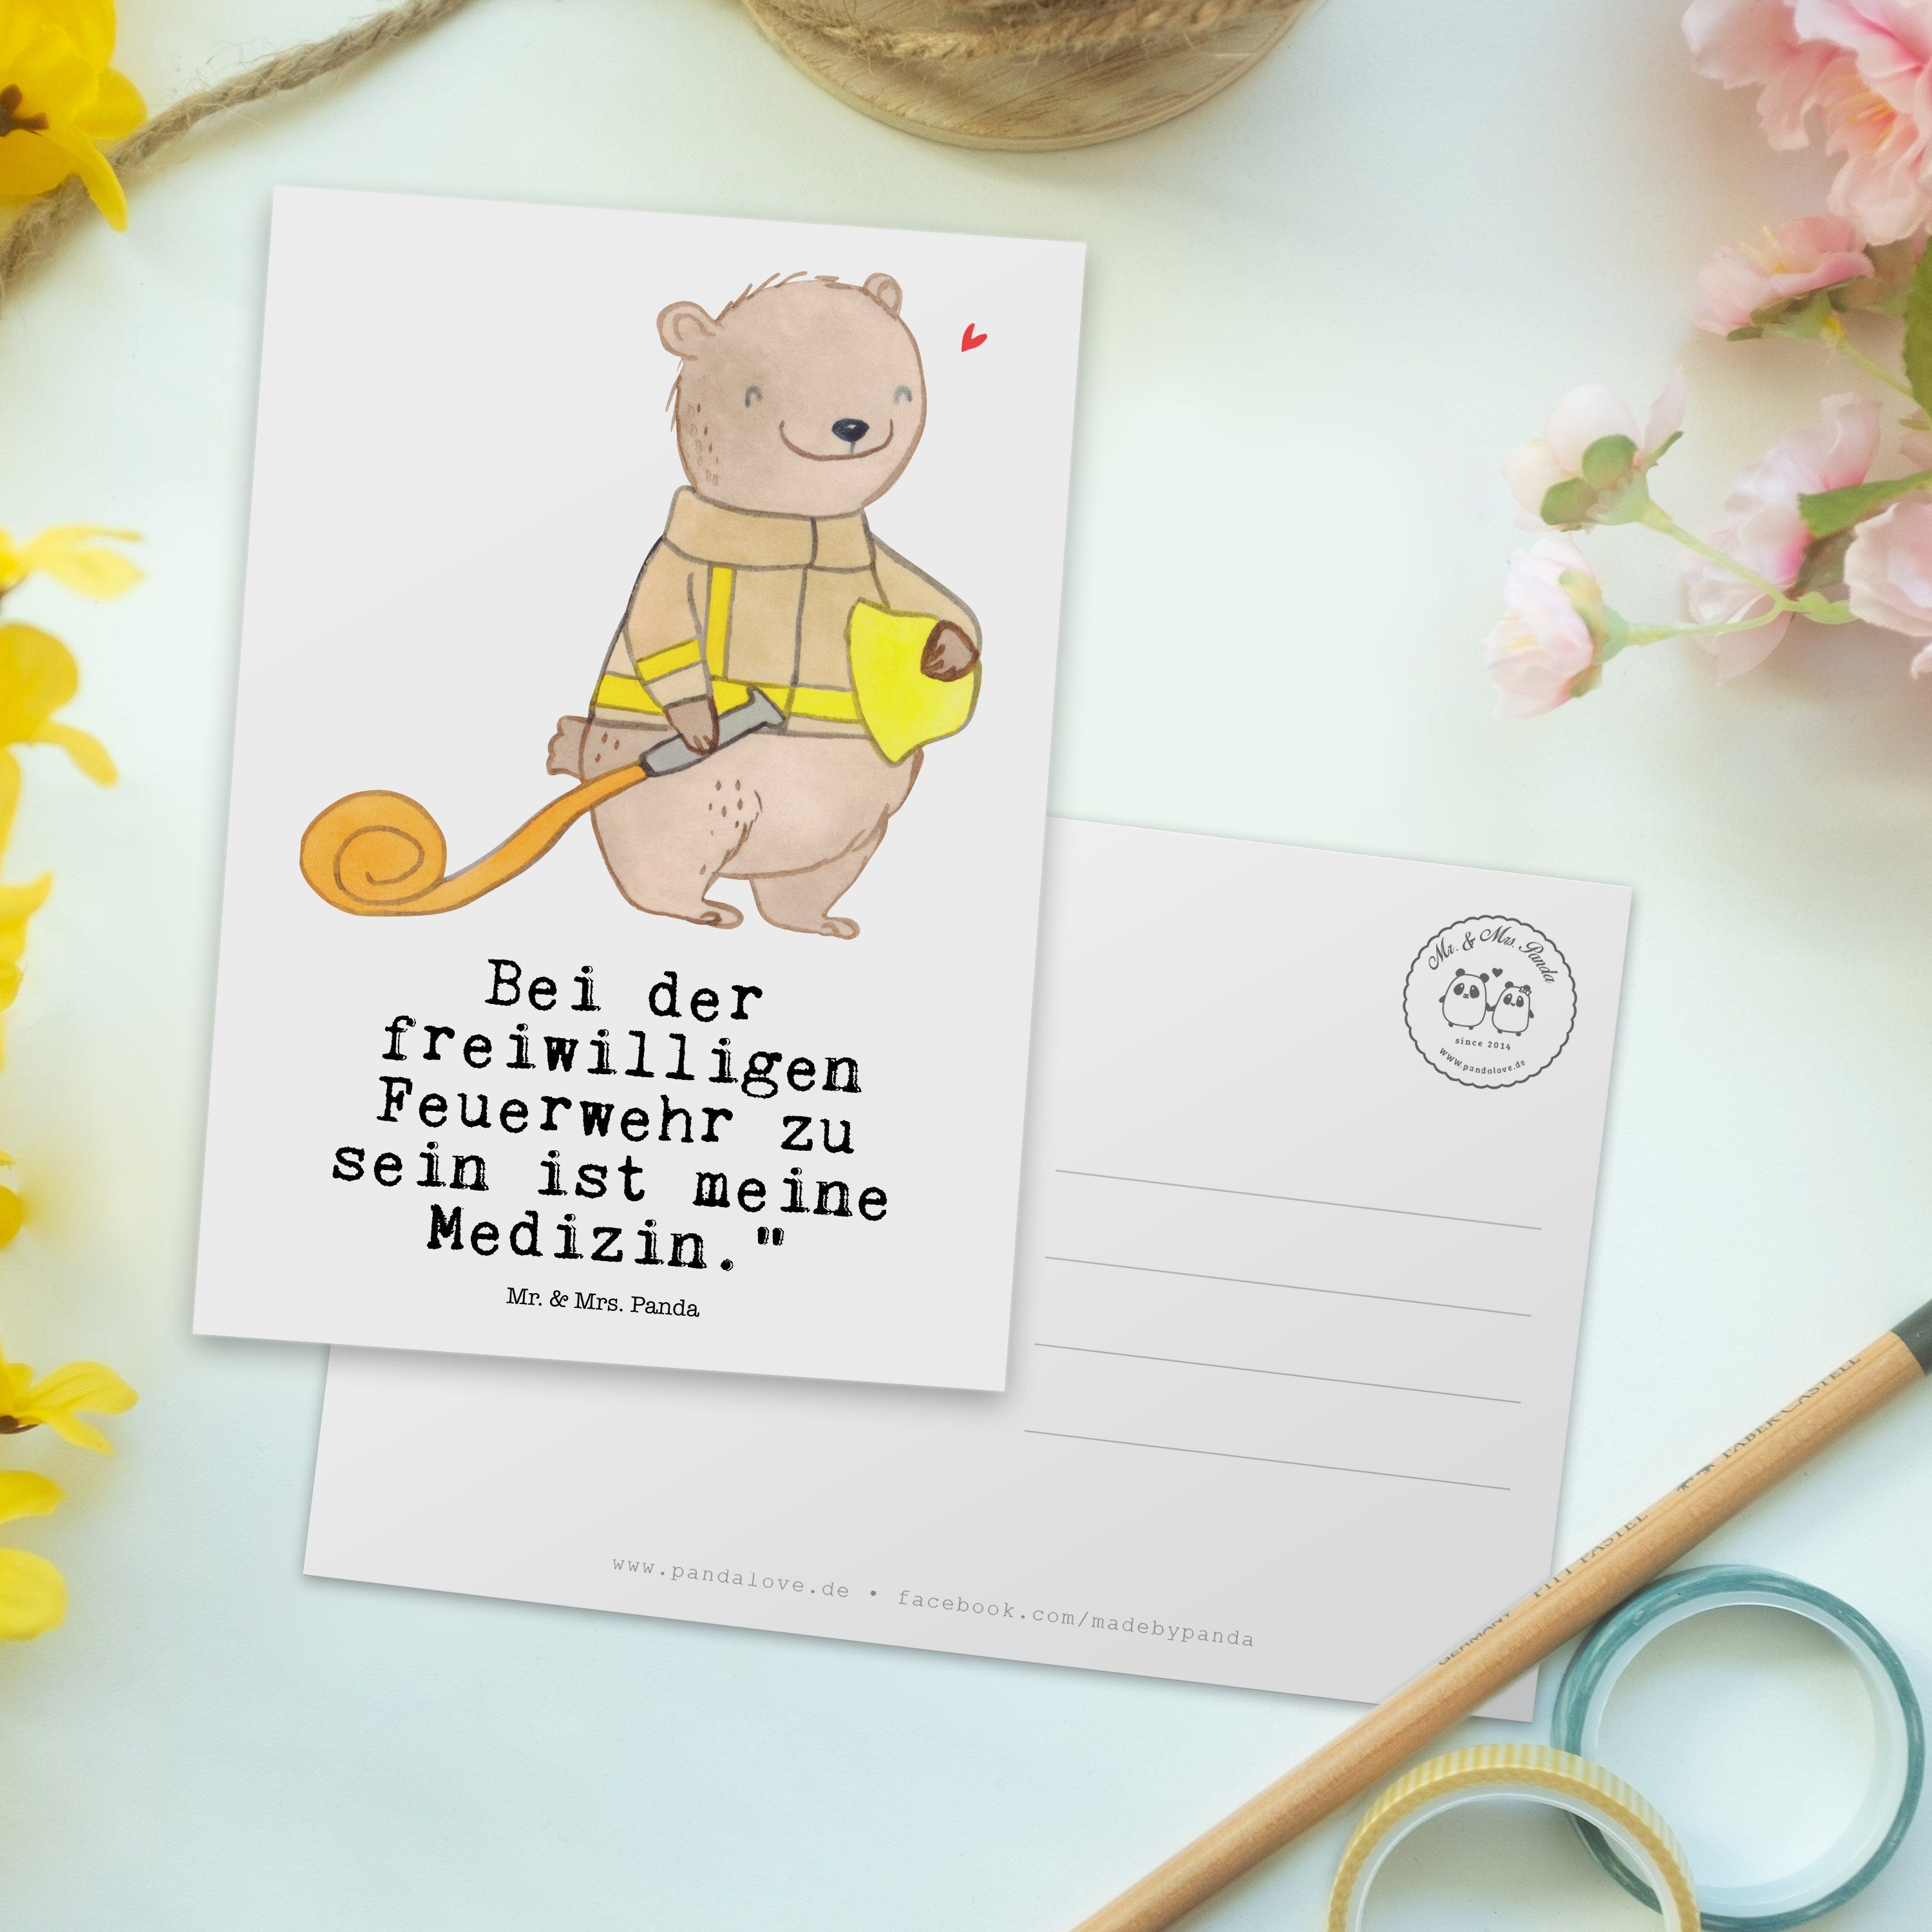 Mr. - Postkarte Geschenk, Bär - Freiwillige Grußkarte, Panda Mrs. Hobby & Weiß Feuerwehr Medizin